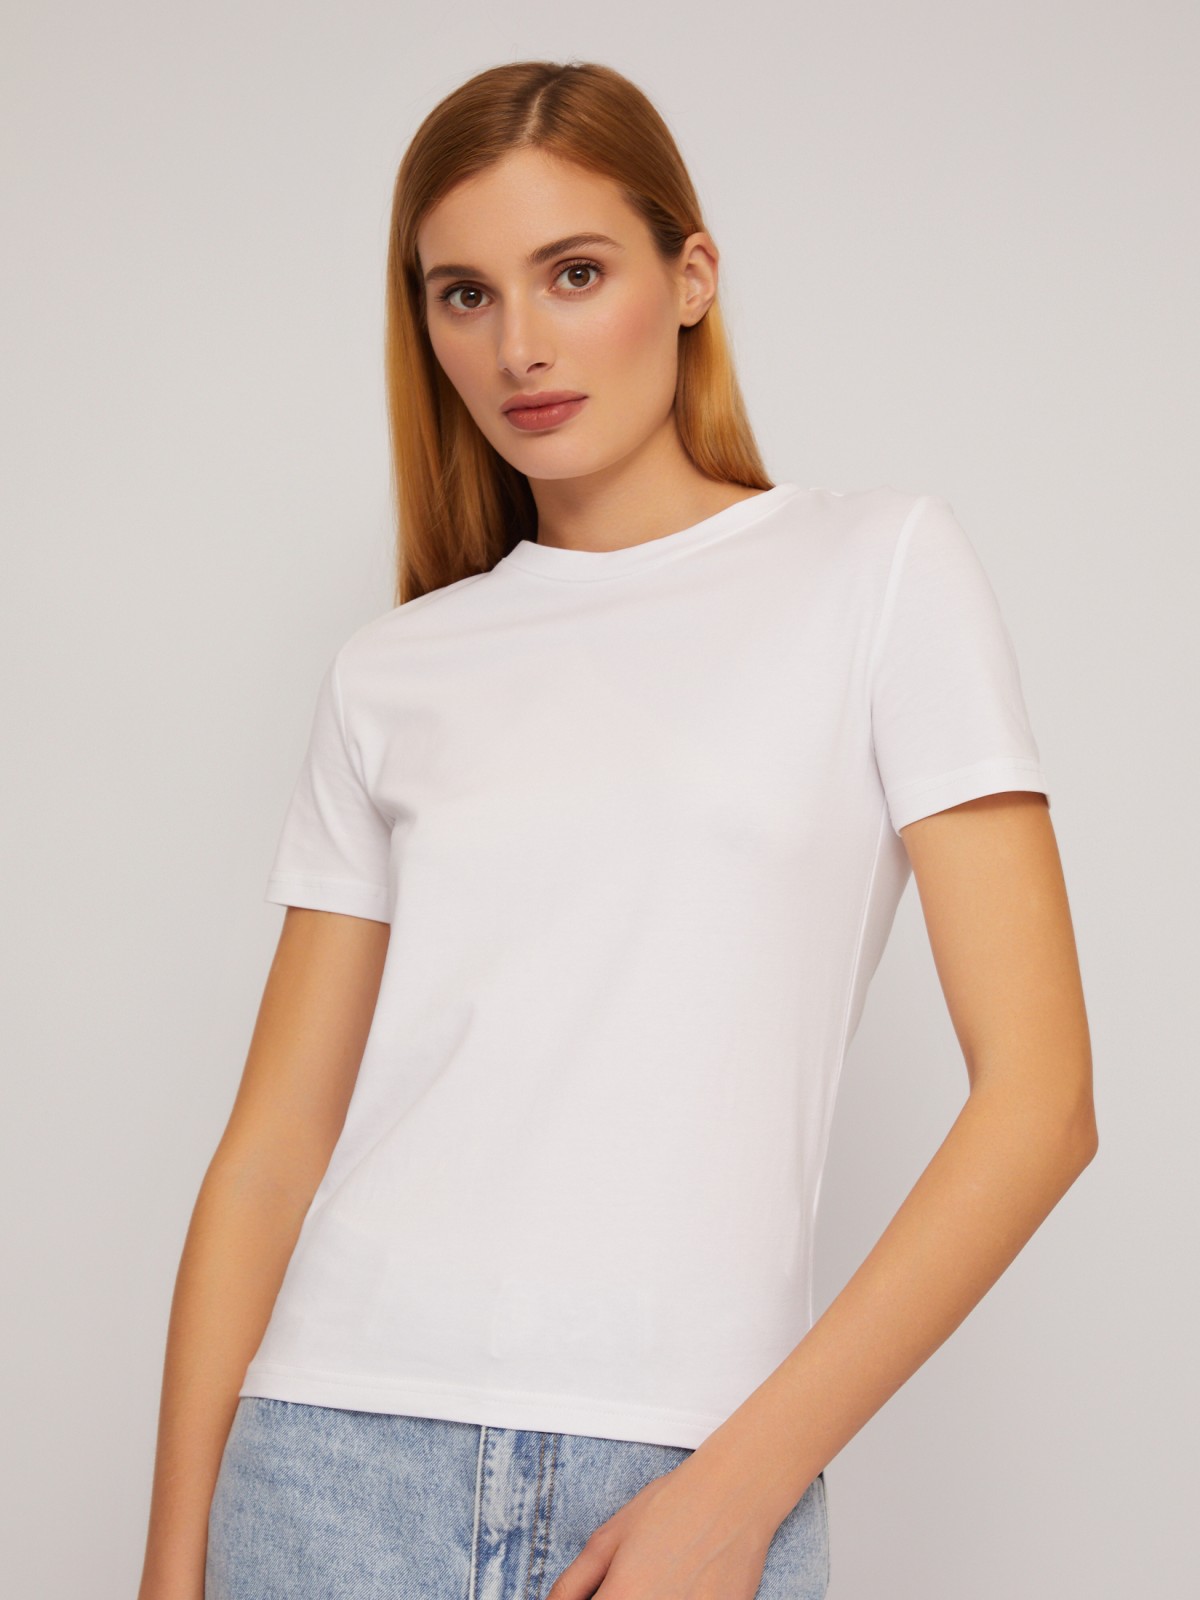 Трикотажный базовая футболка из хлопка без принта zolla 024233264132, цвет белый, размер XS - фото 3